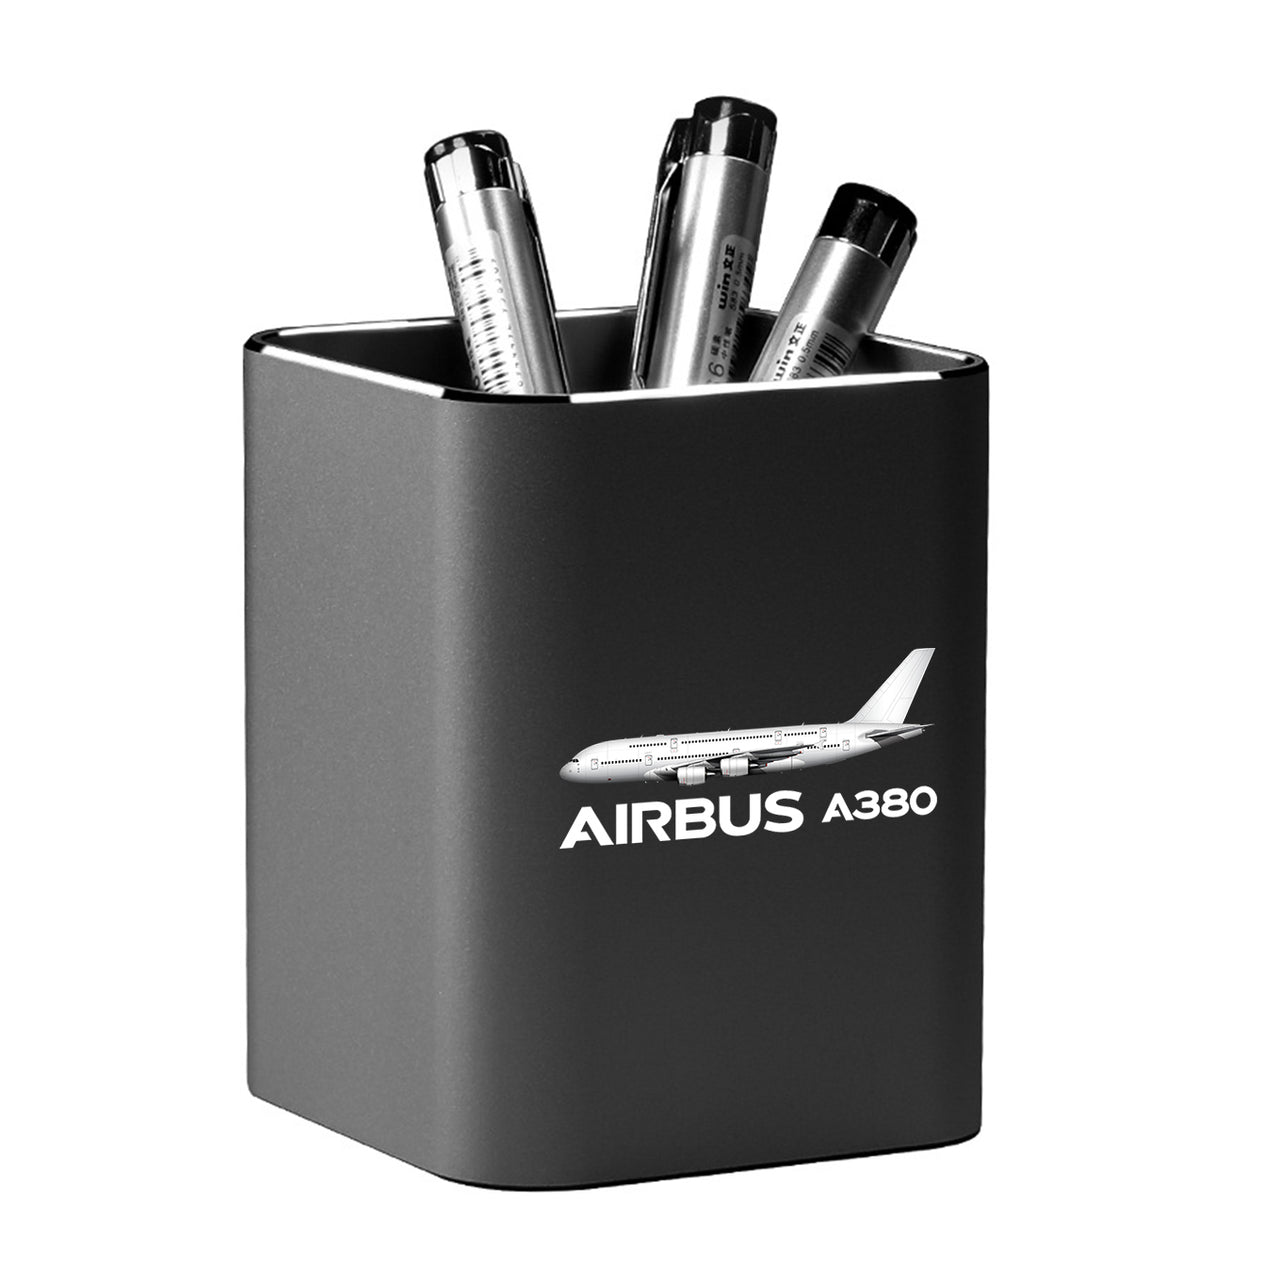 The Airbus A380 Designed Aluminium Alloy Pen Holders